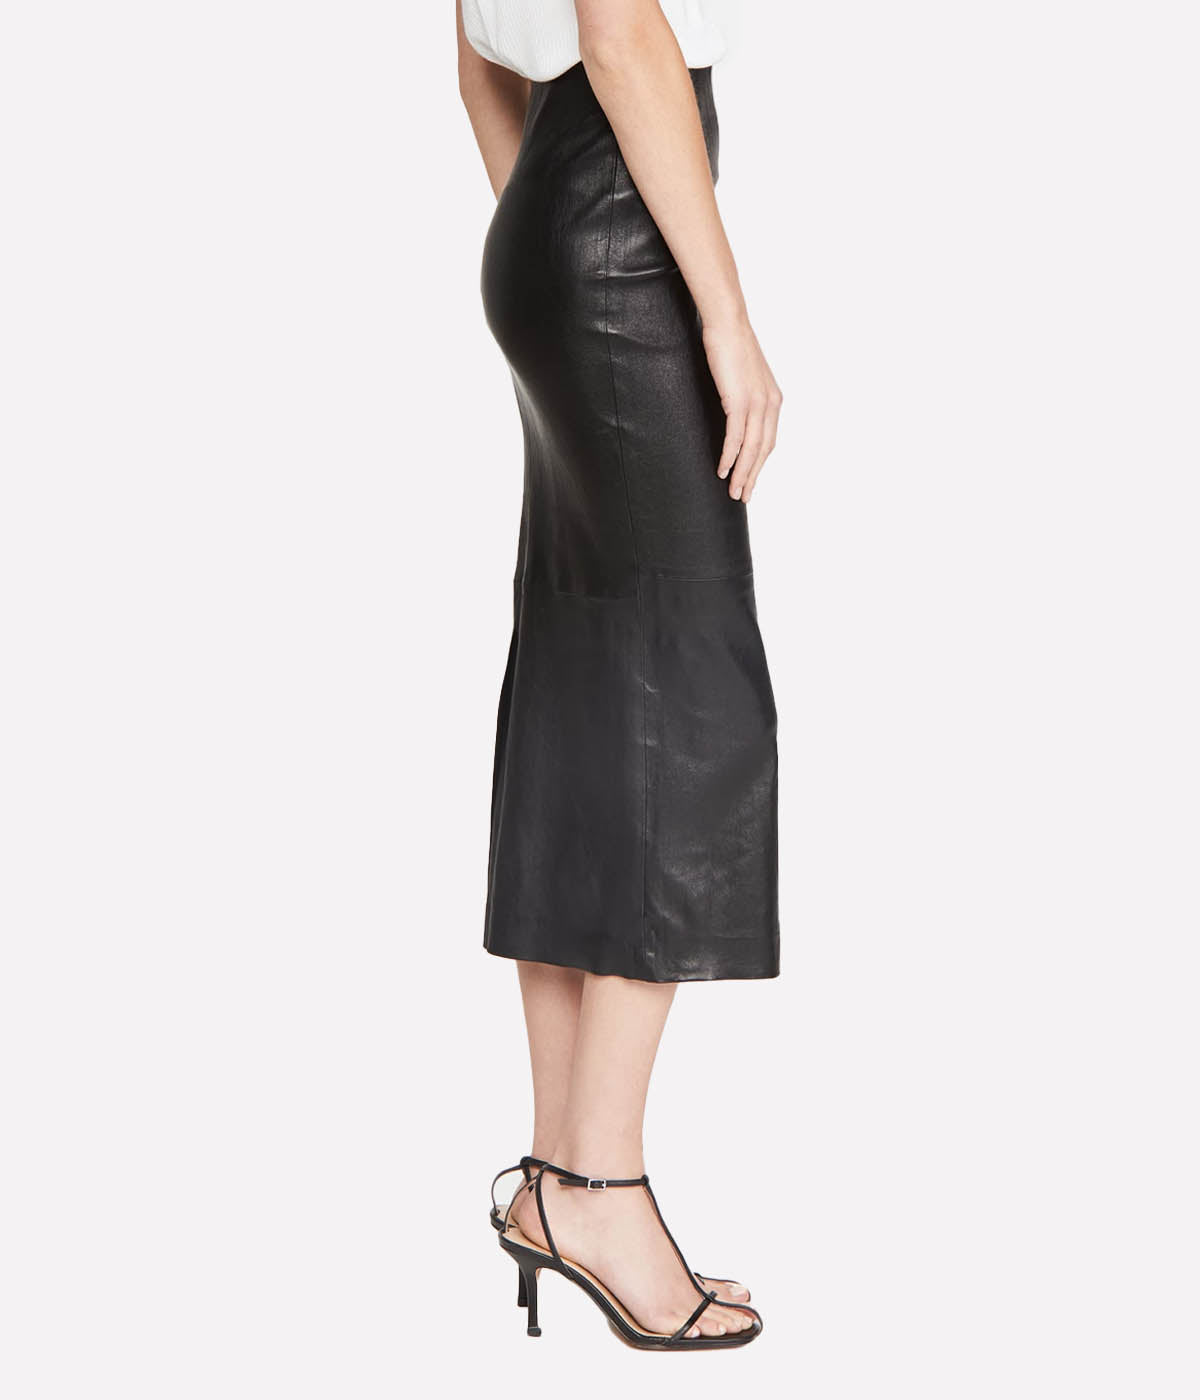 Leather Tube Skirt in Black